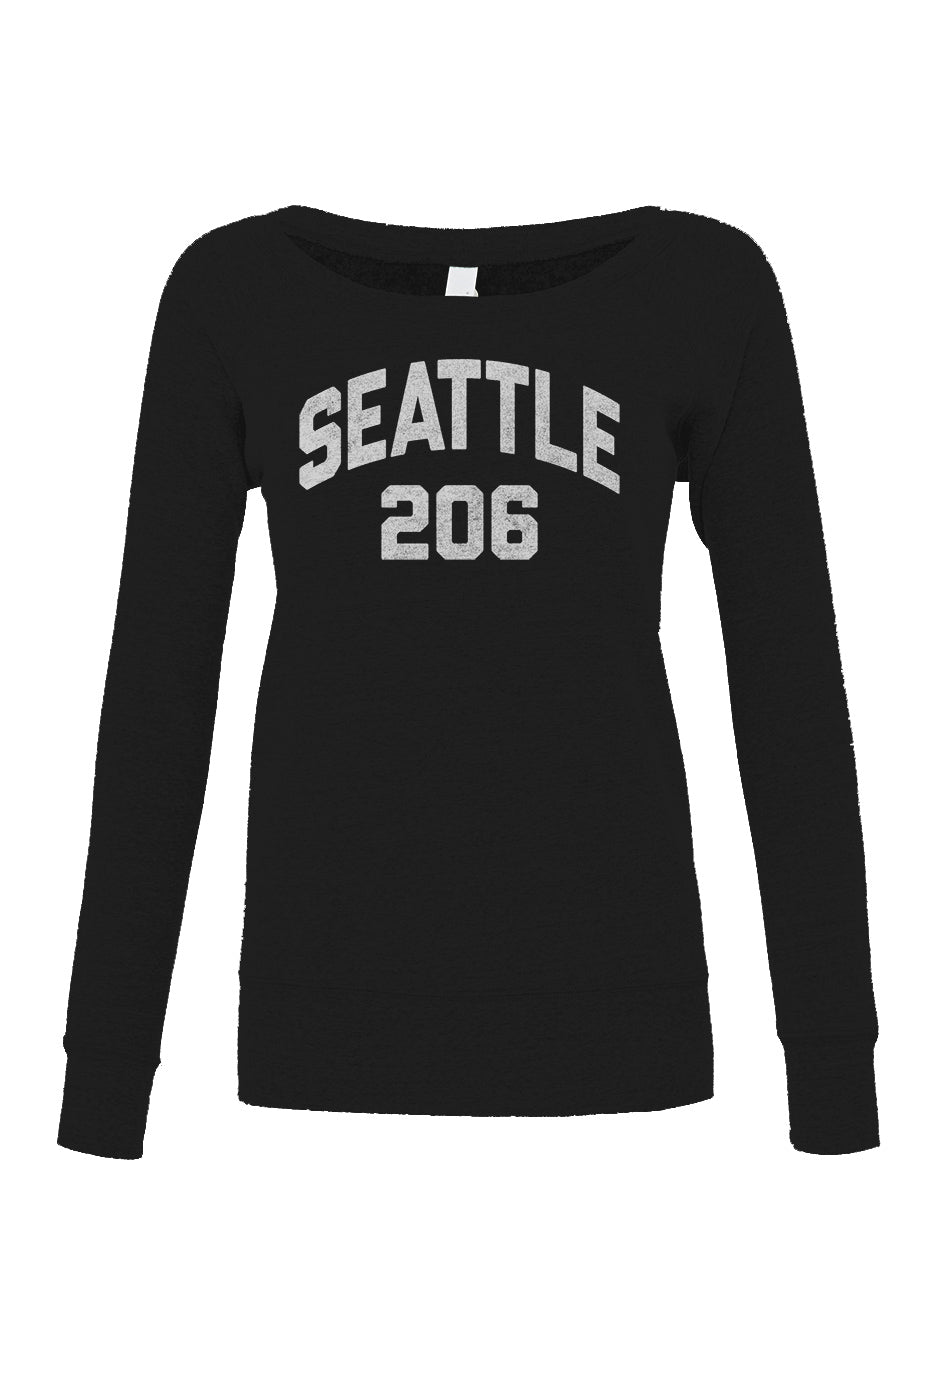 Women's Seattle 206 Area Code Scoop Neck Fleece